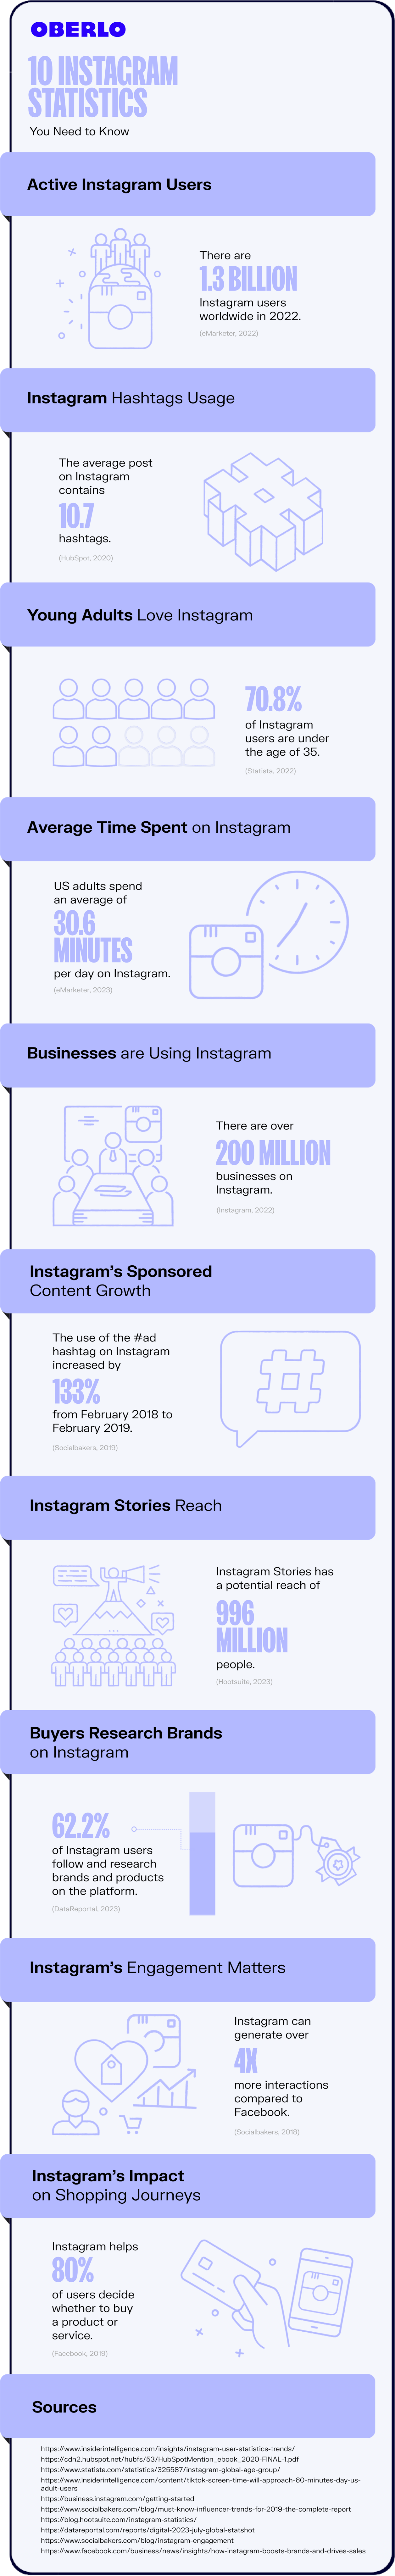 instagram statistics full infographic